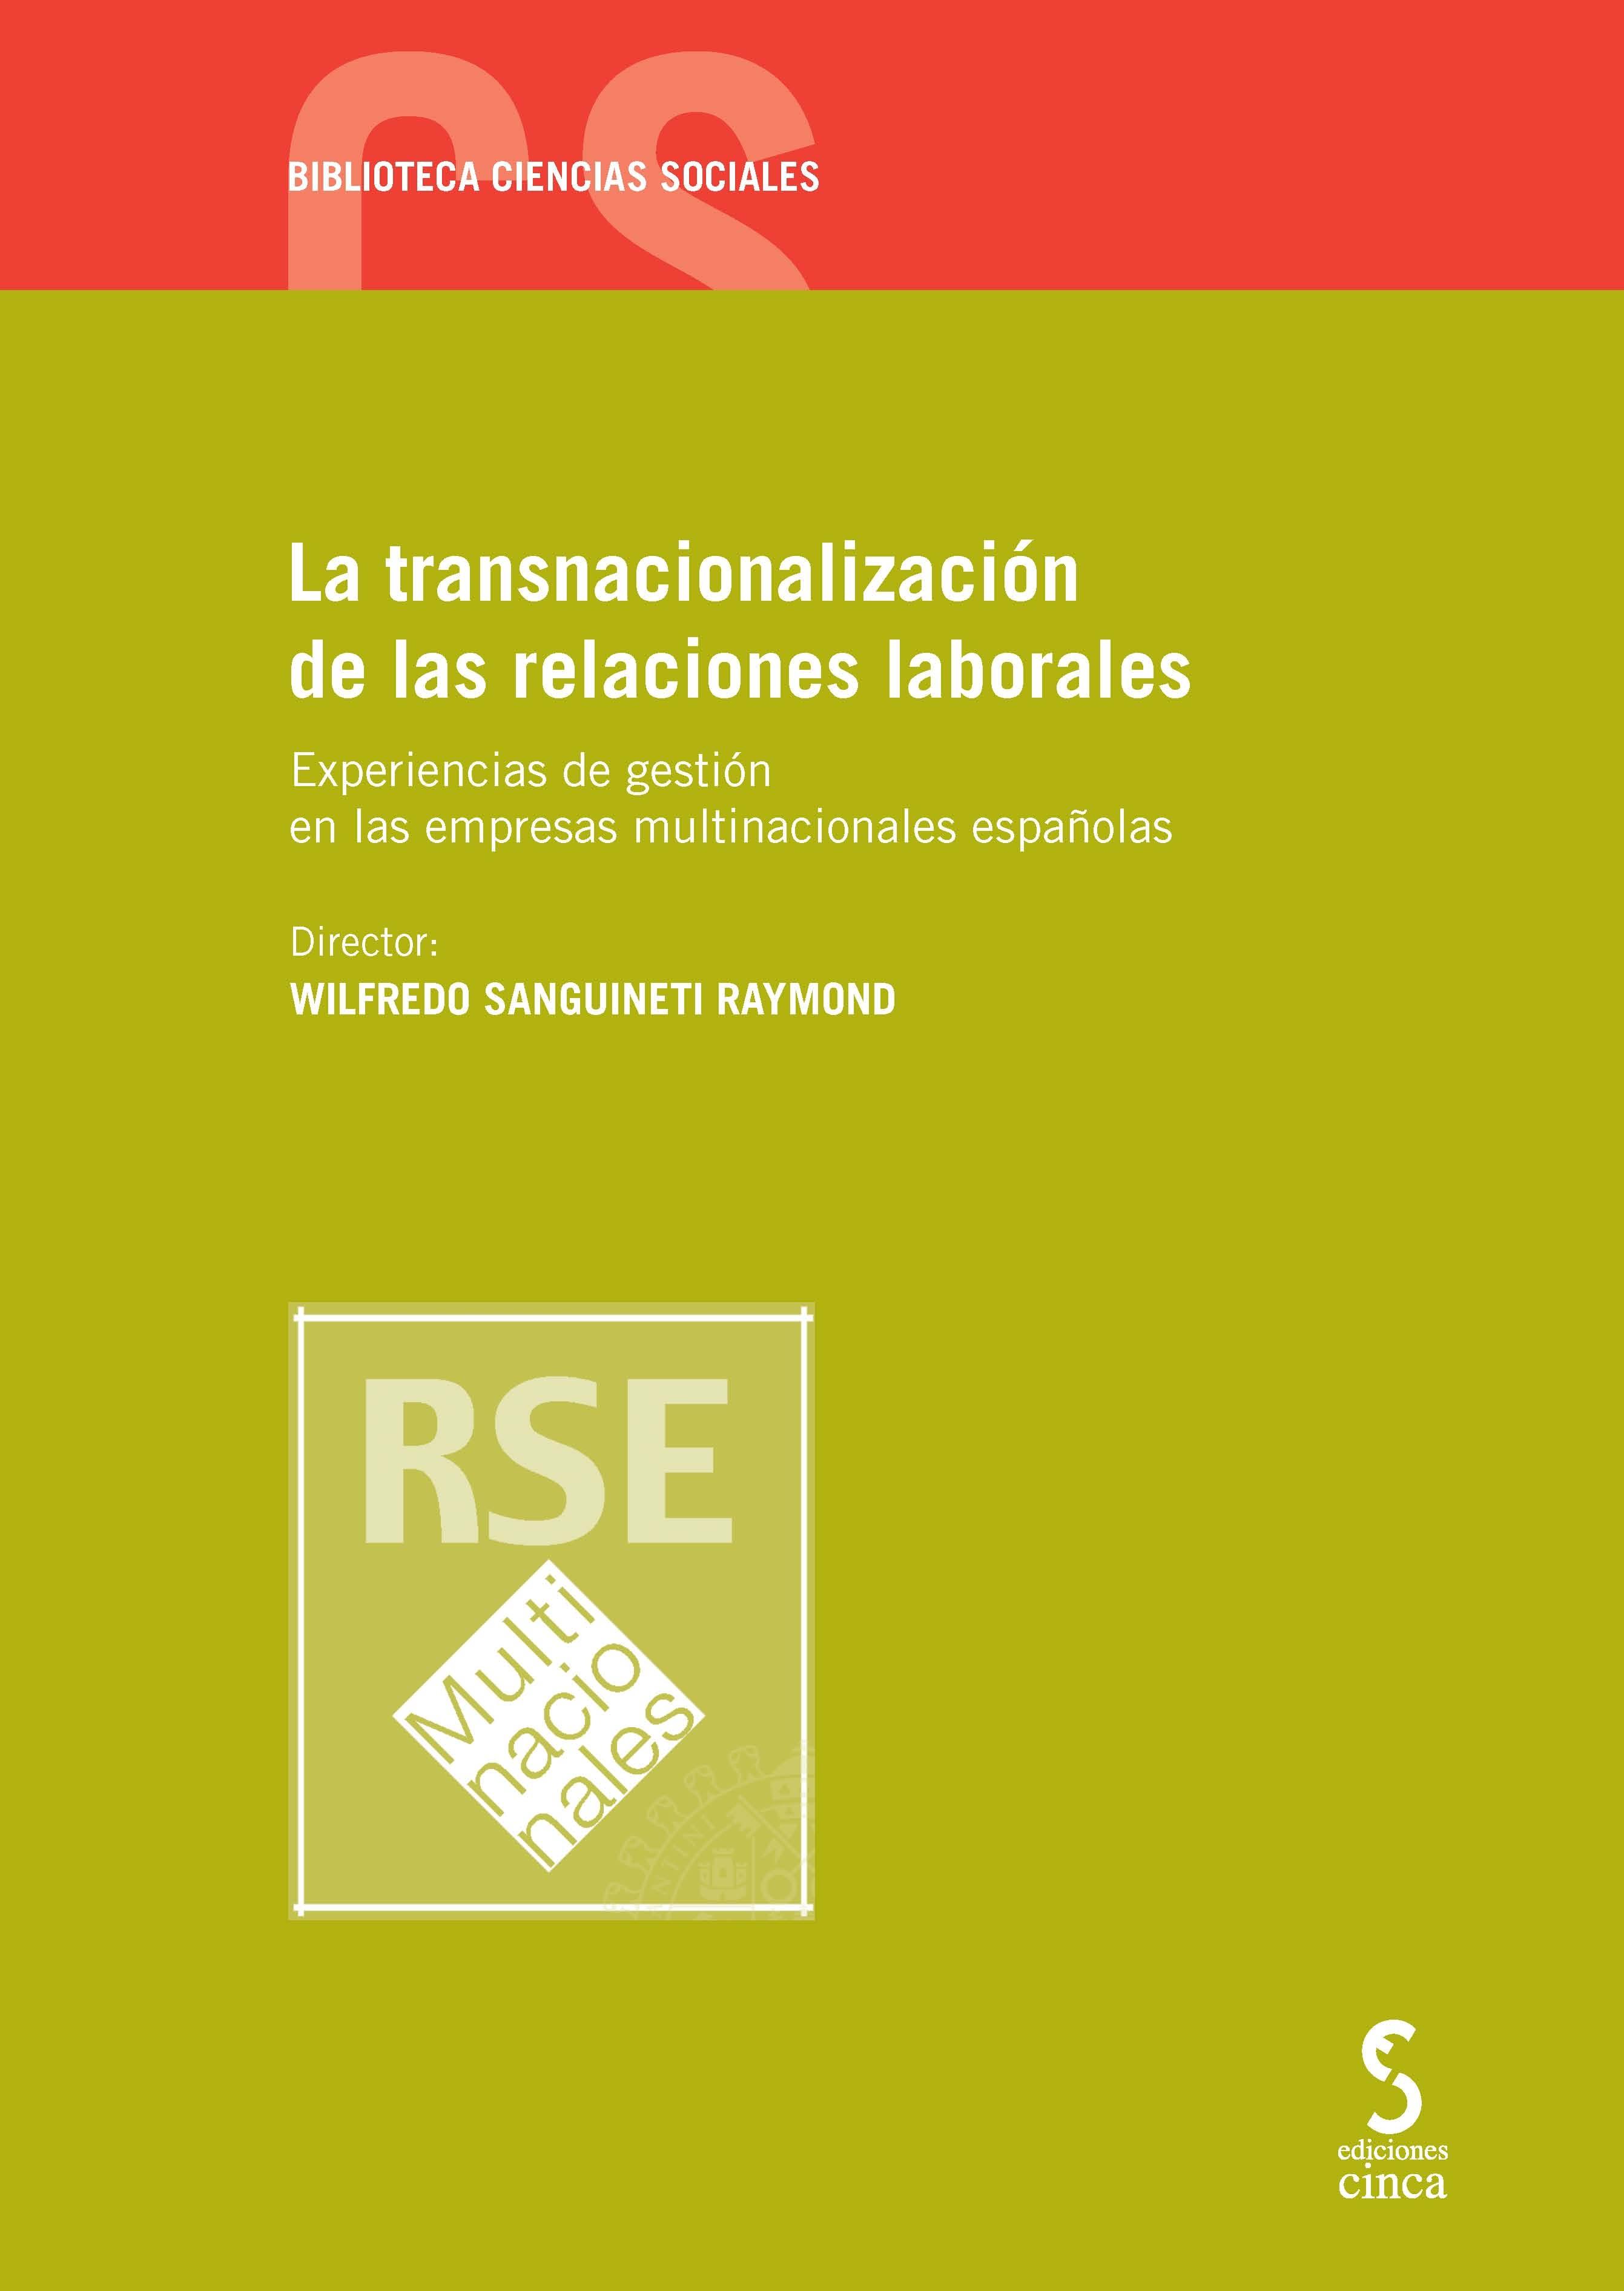 La transnacionalización de las relaciones laborales "Experiencias de gestión en las empresas multinacionales españolas"